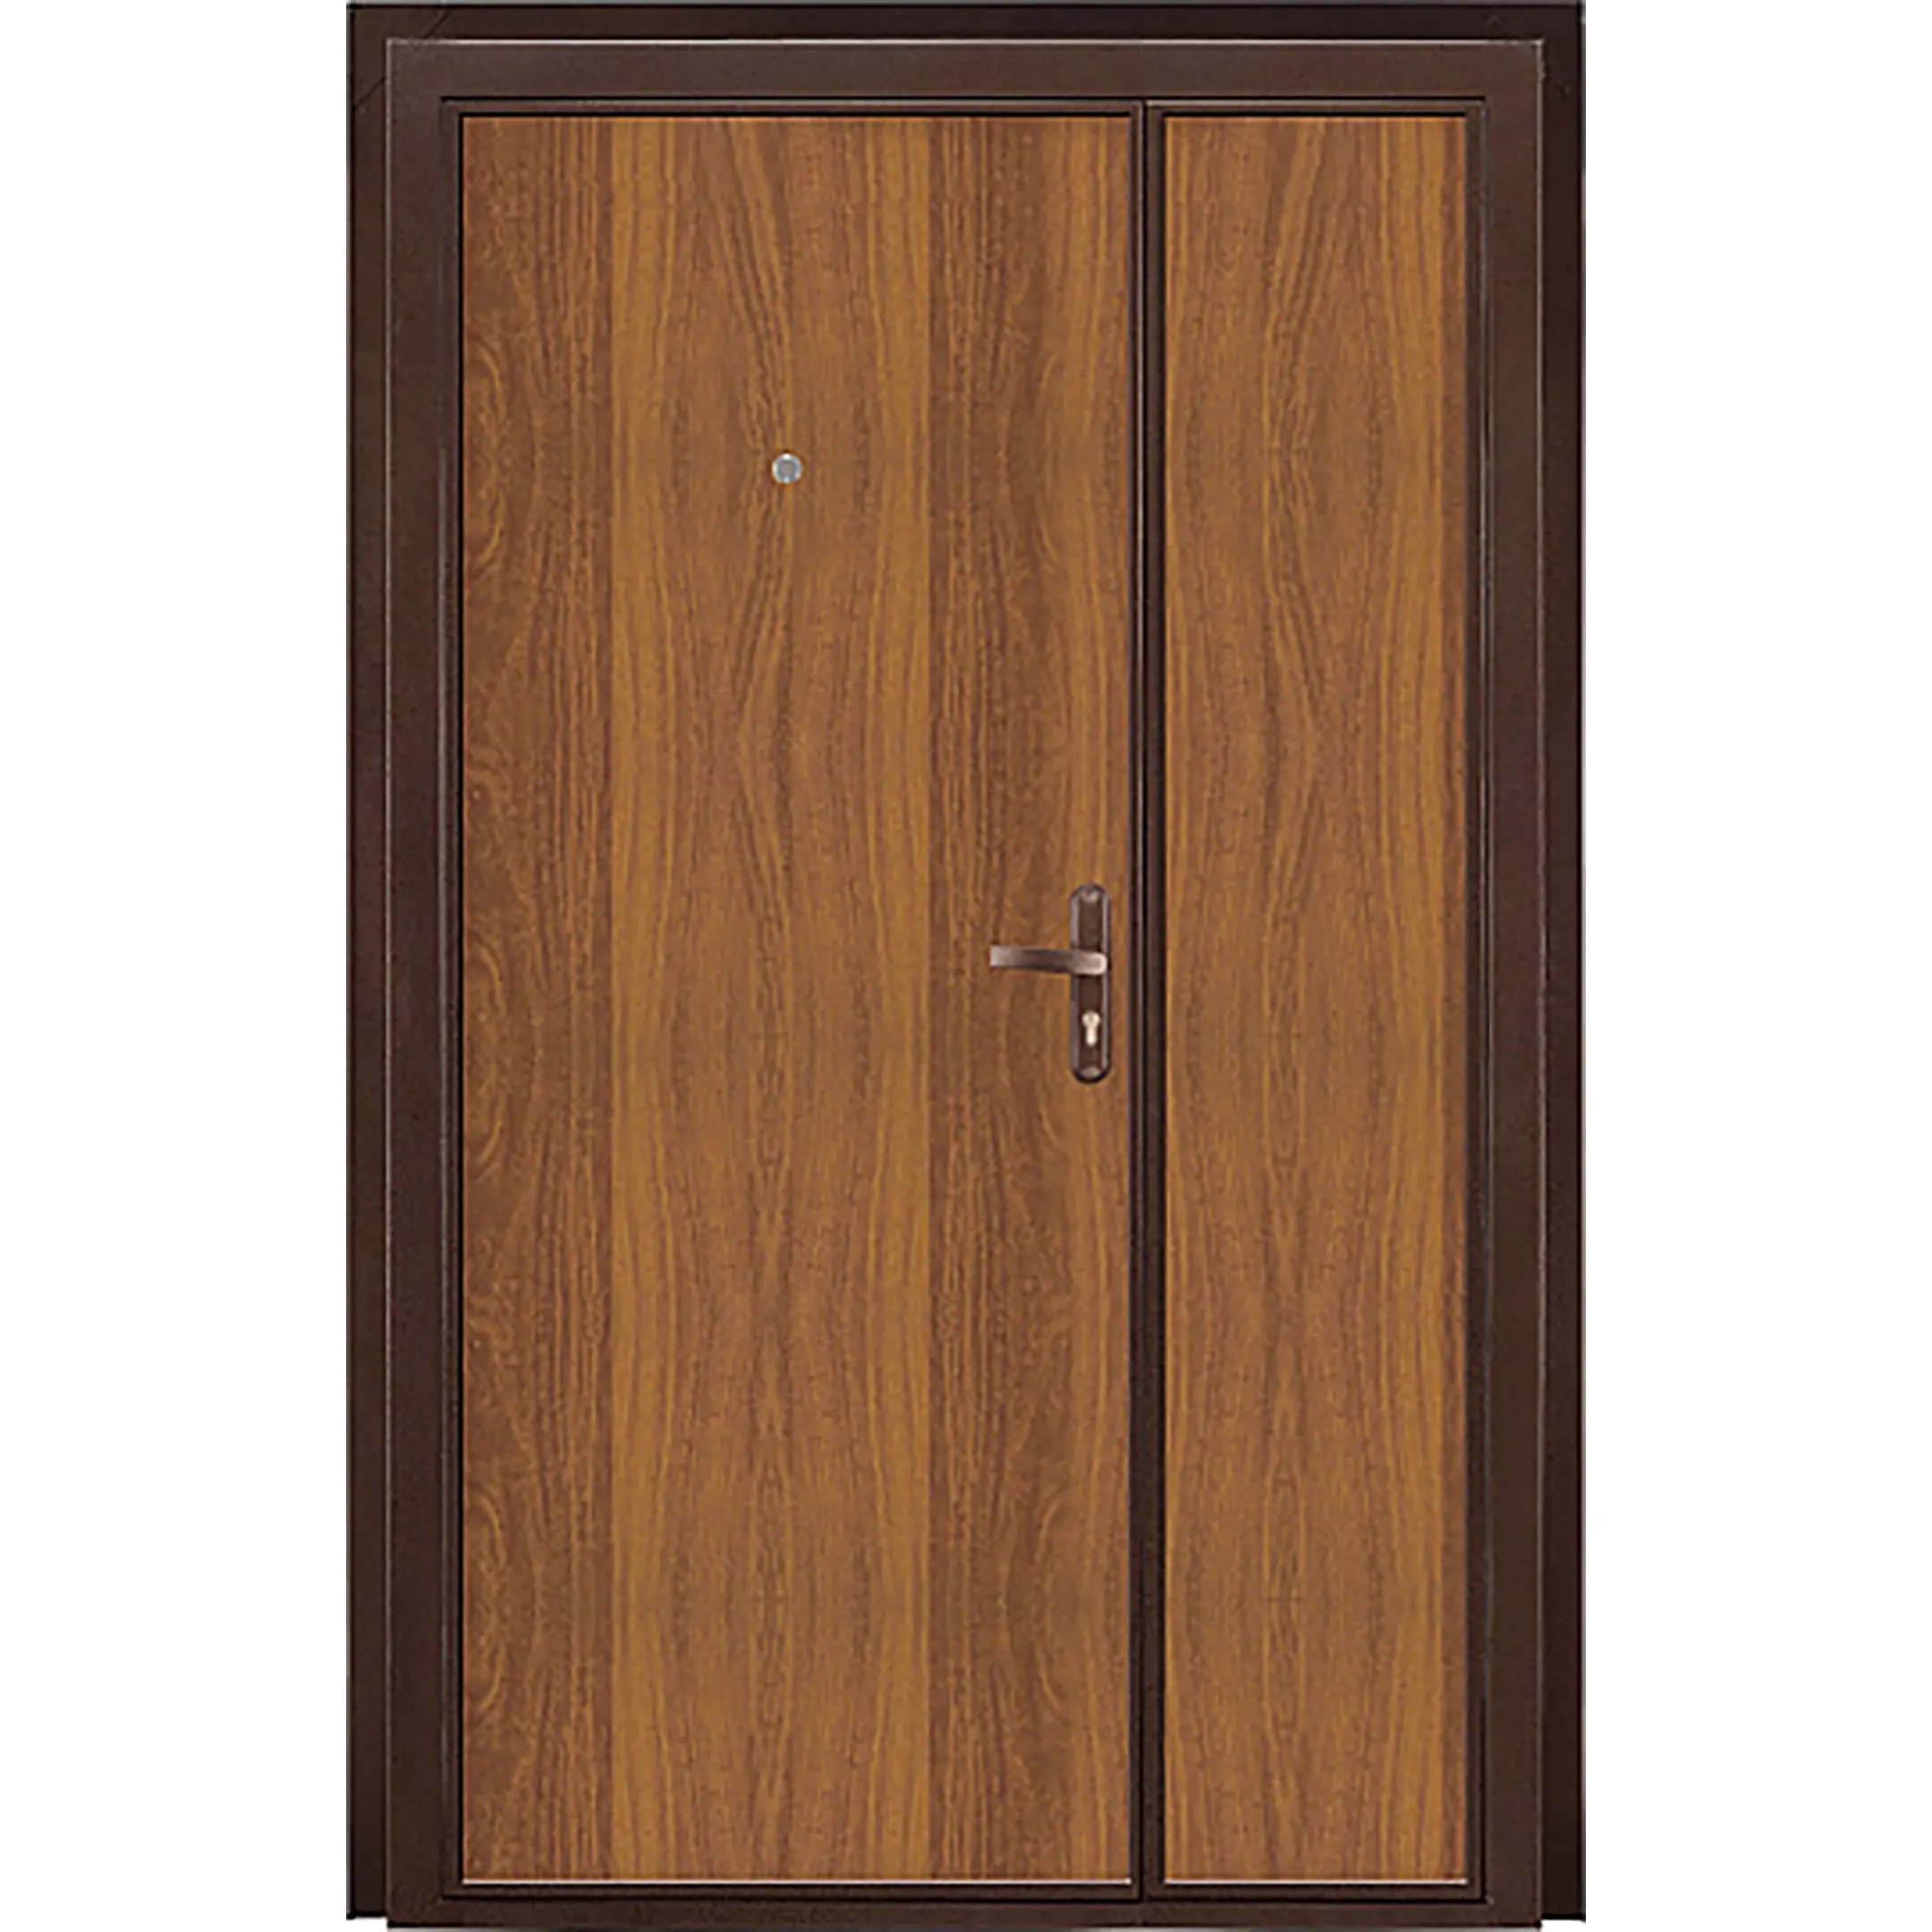 Металлическая дверь СПЕЦ DL 1250 (Правое открывание)